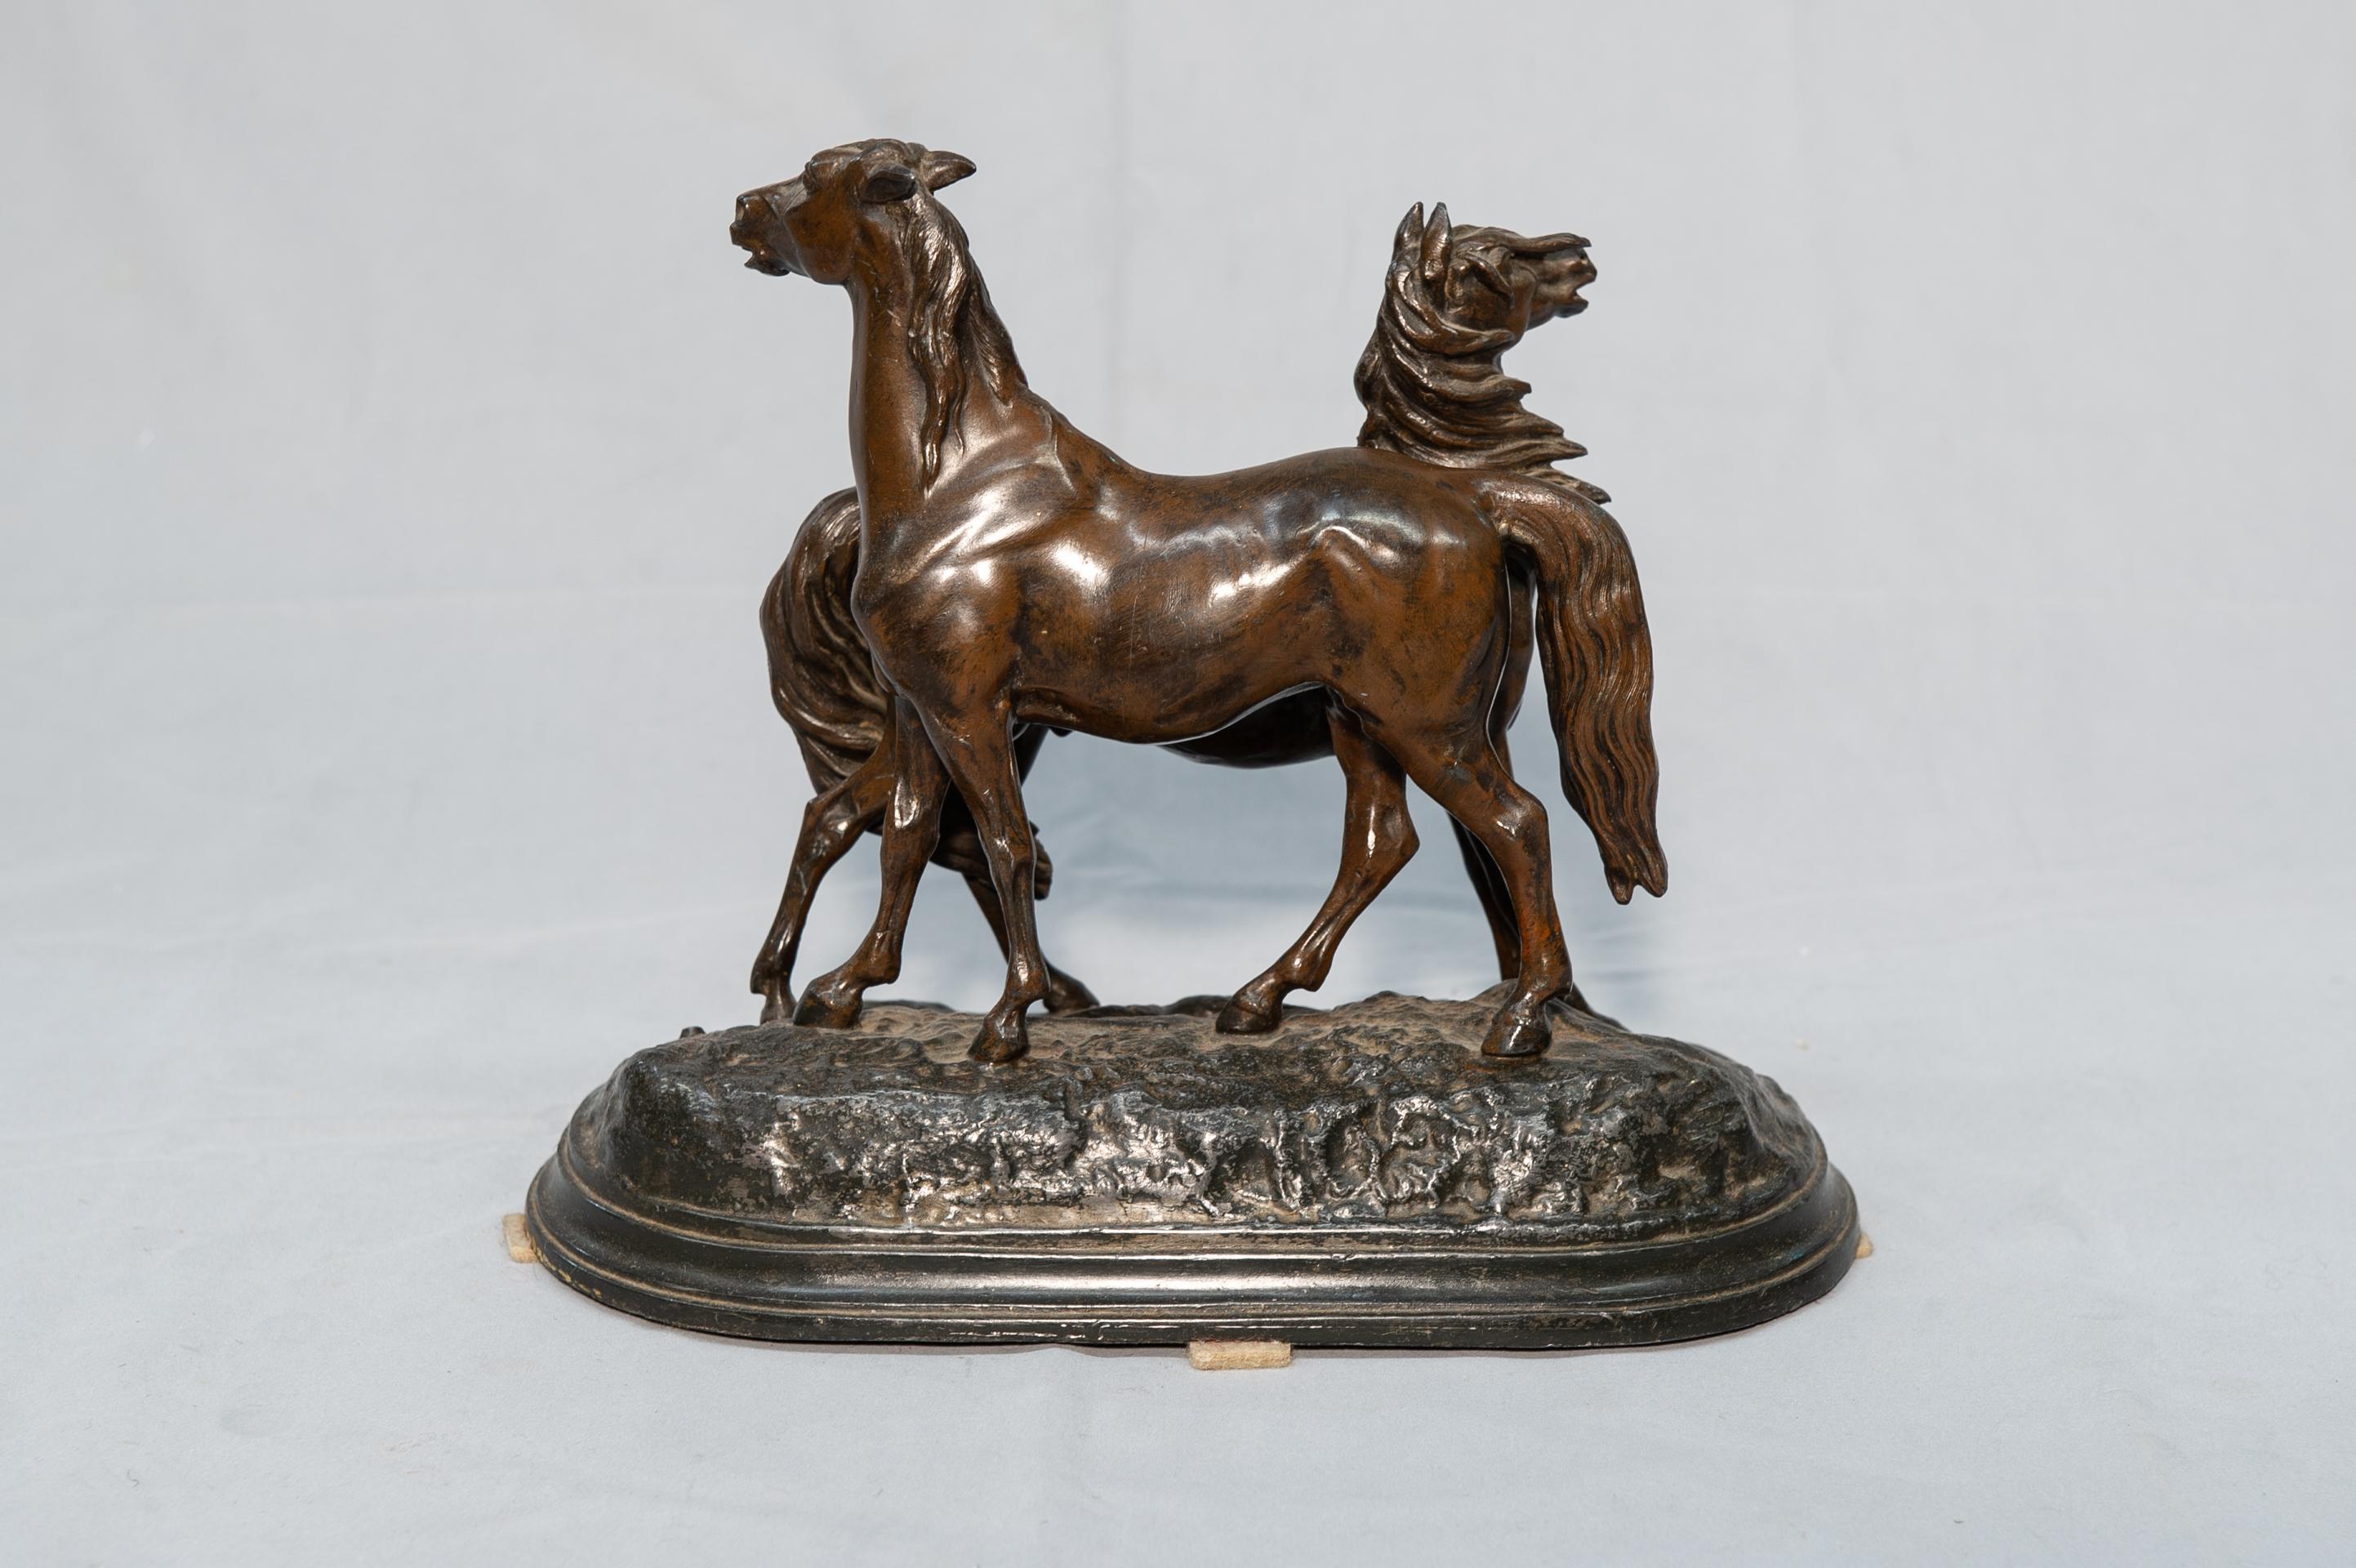 Beaux Arts Horses Statue For Sale